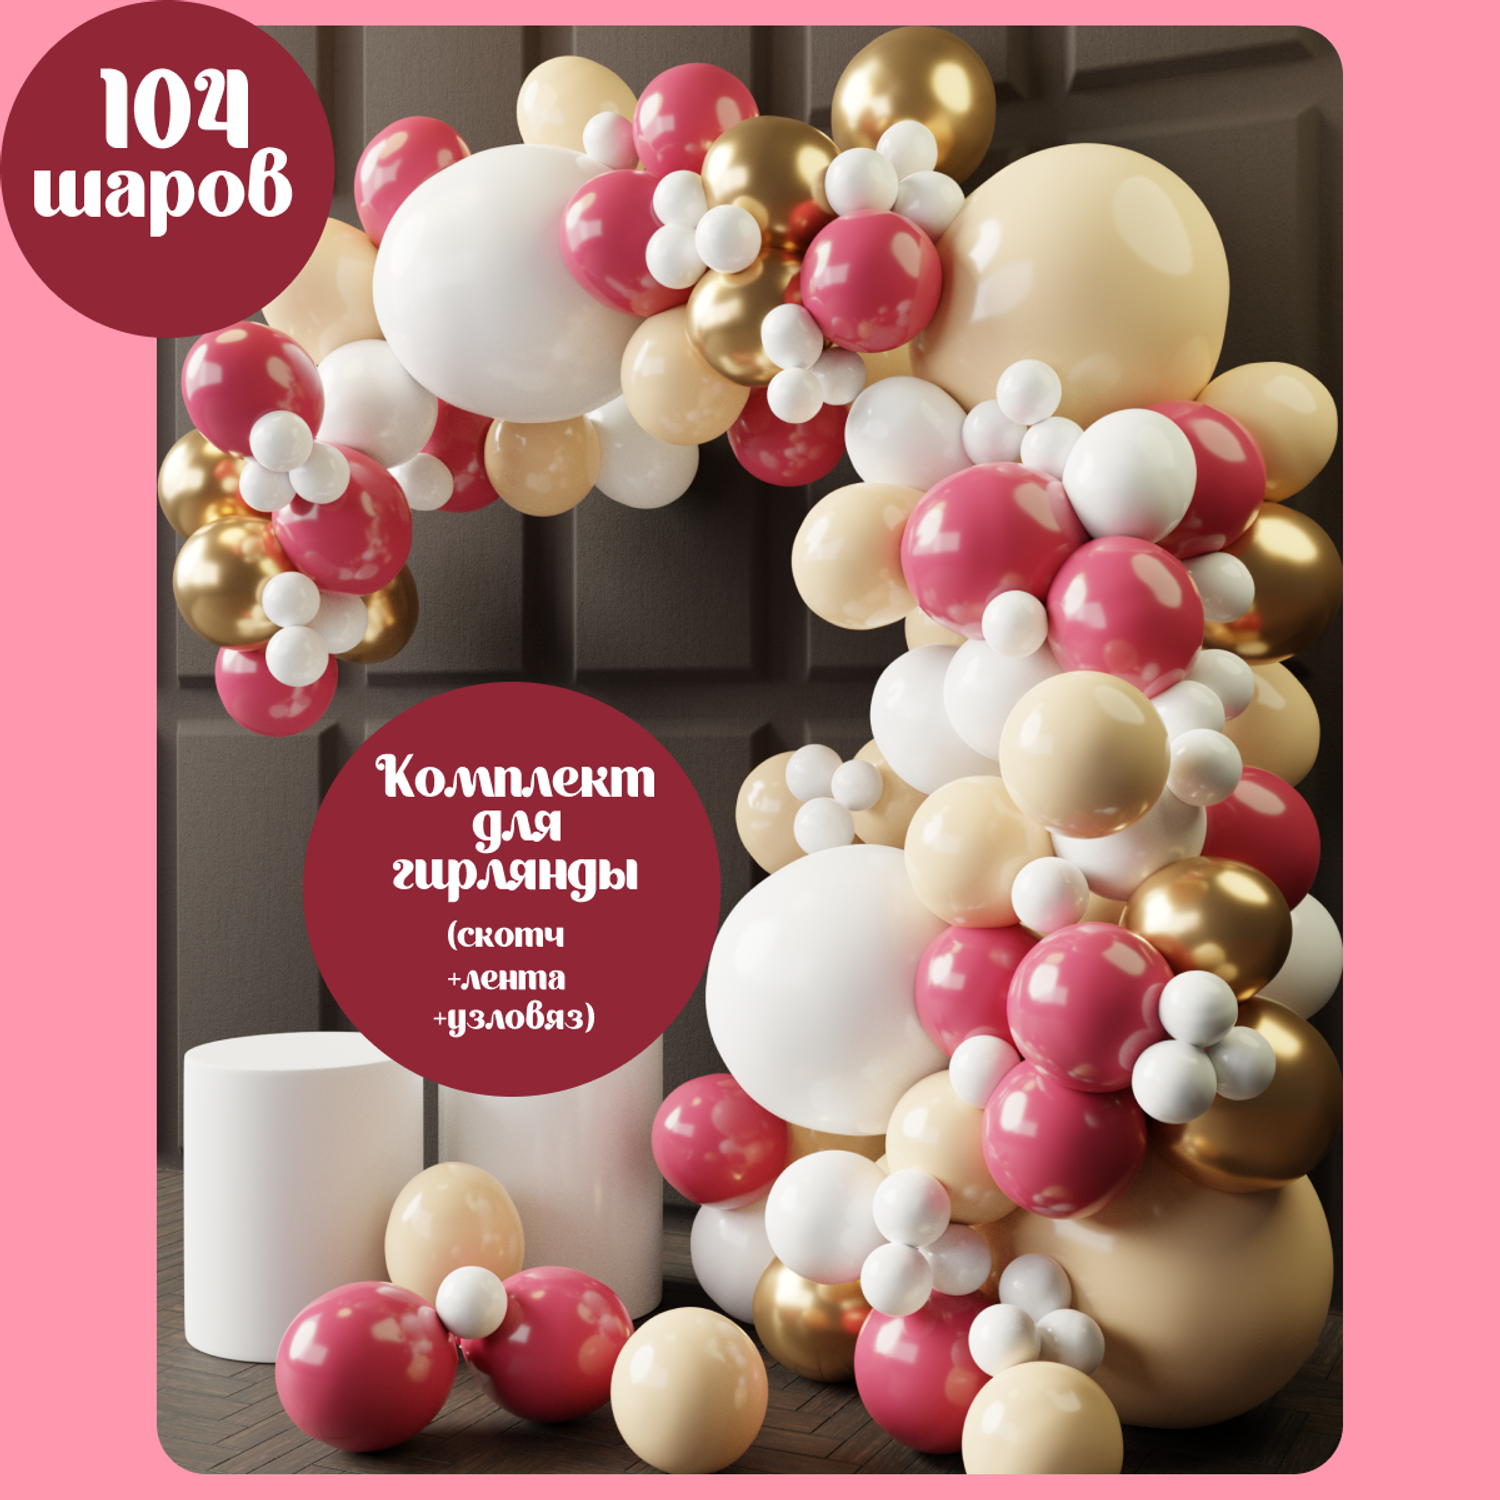 Воздушные шары набор Мишины шарики фотозона на праздник день рождения для девочки 104 шт - фото 1